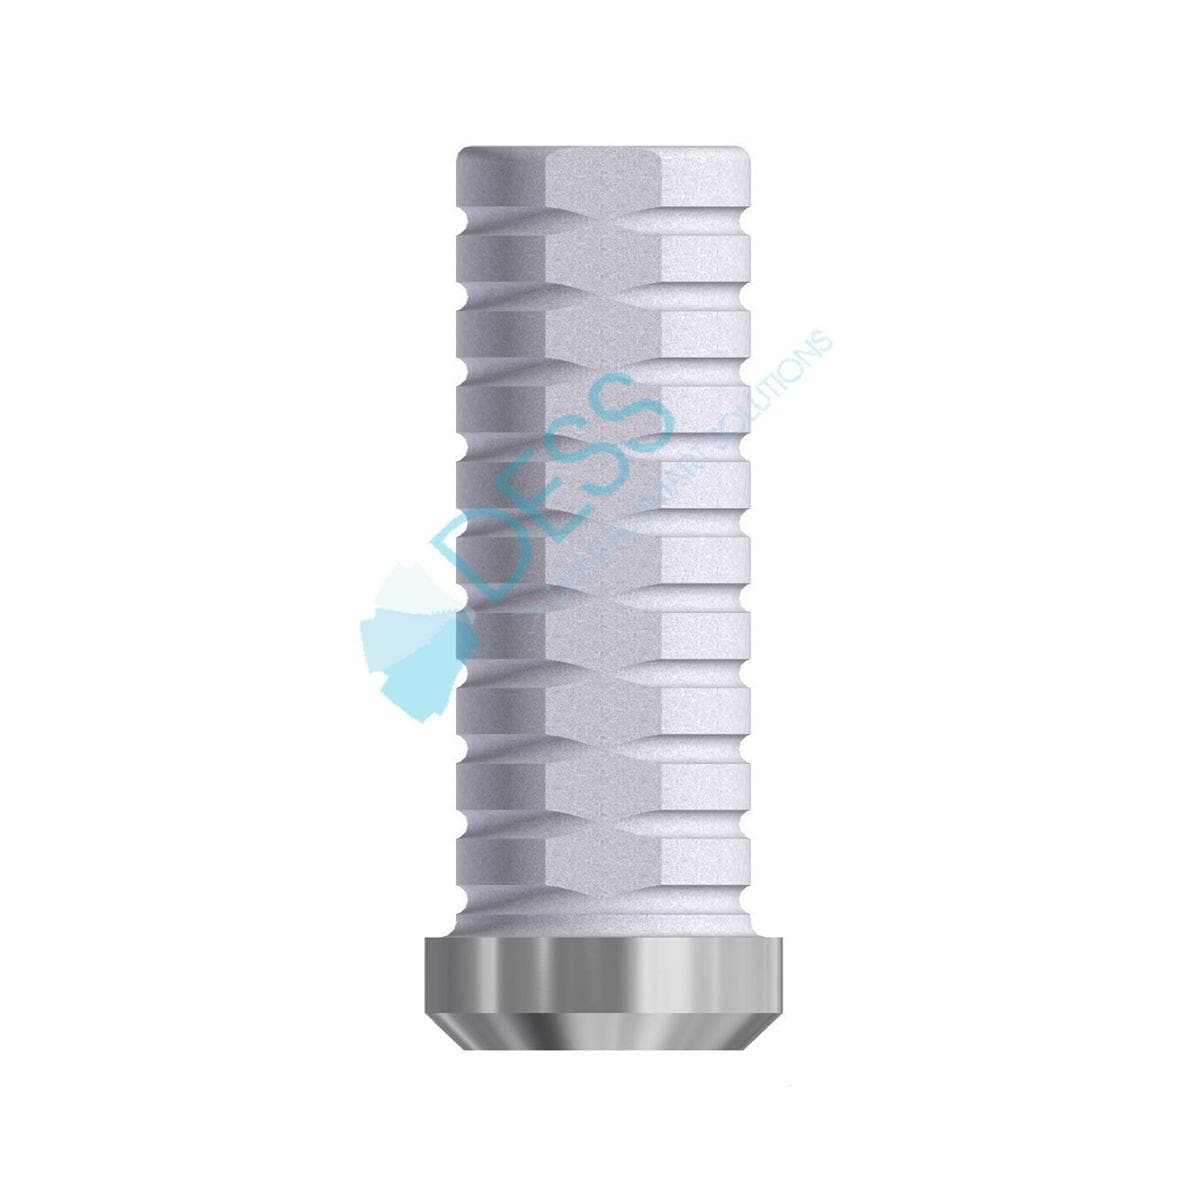 Provisorisches Titanabutment - kompatibel mit Nobel Branemark® - NP Ø 3,5 mm, ohne Rotationsschutz